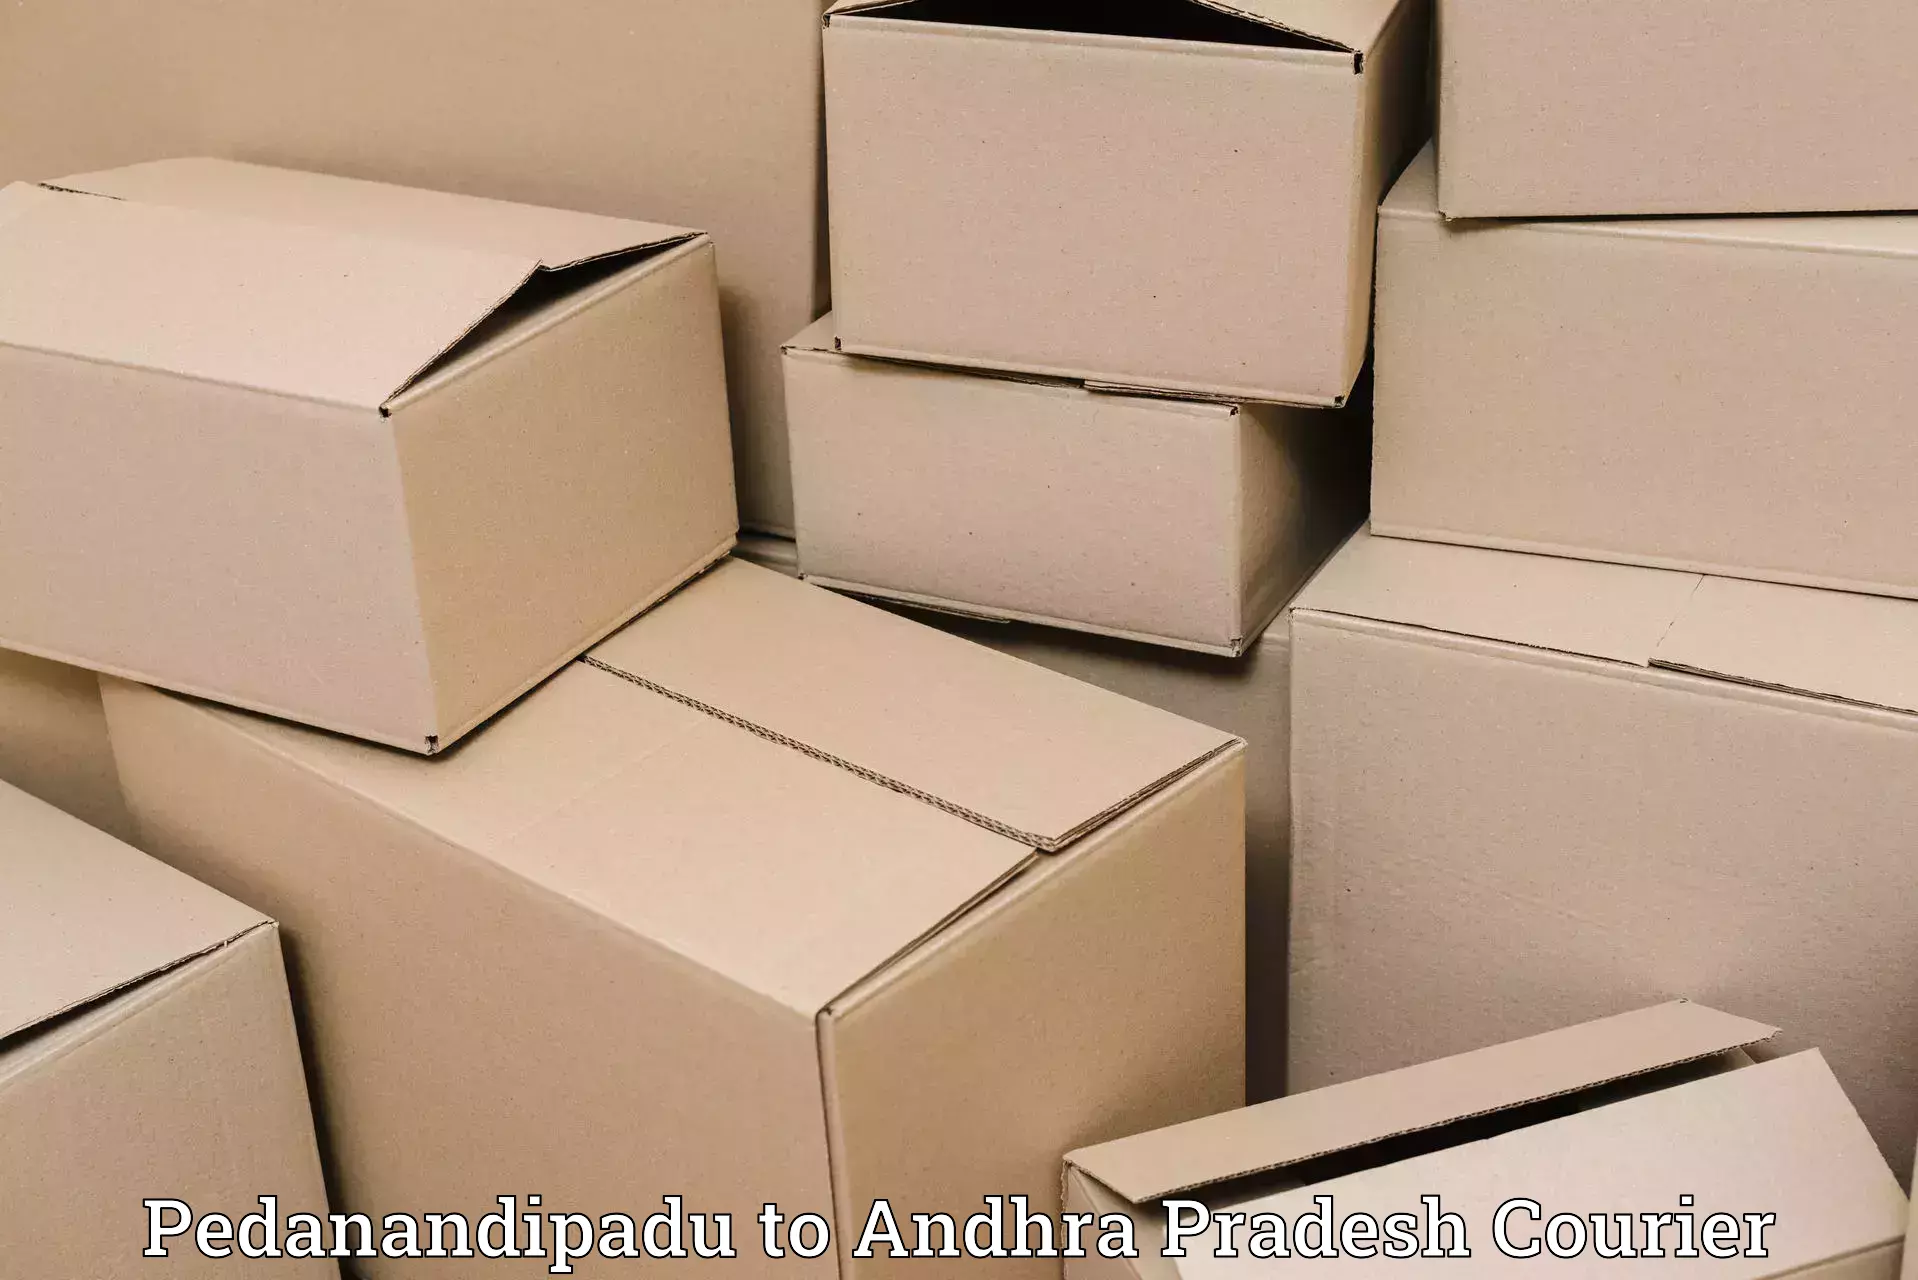 Advanced shipping technology Pedanandipadu to Konduru